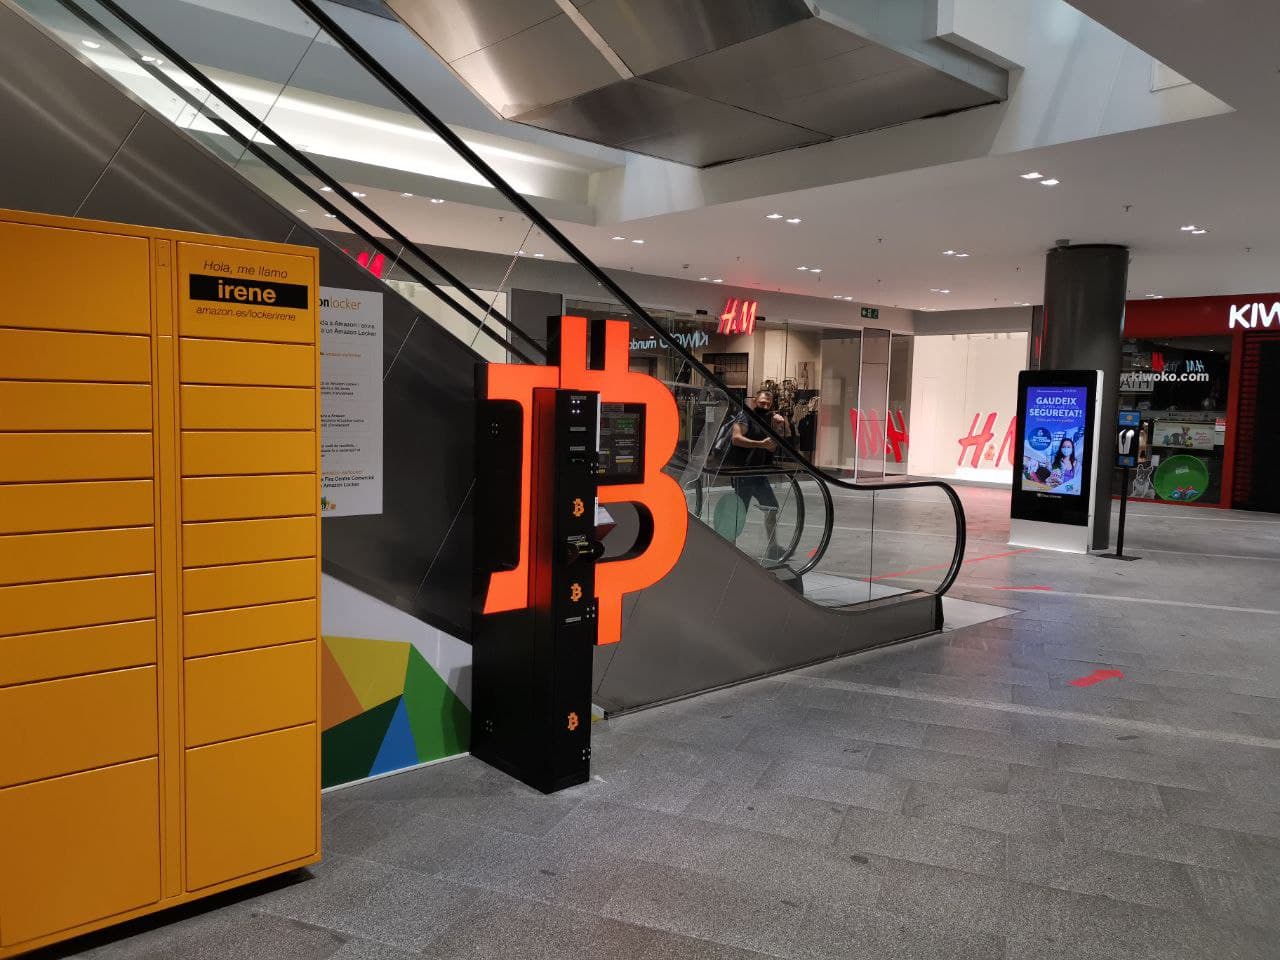 Cajero automático bitcoin en el centro comercial la fira, foto número 3